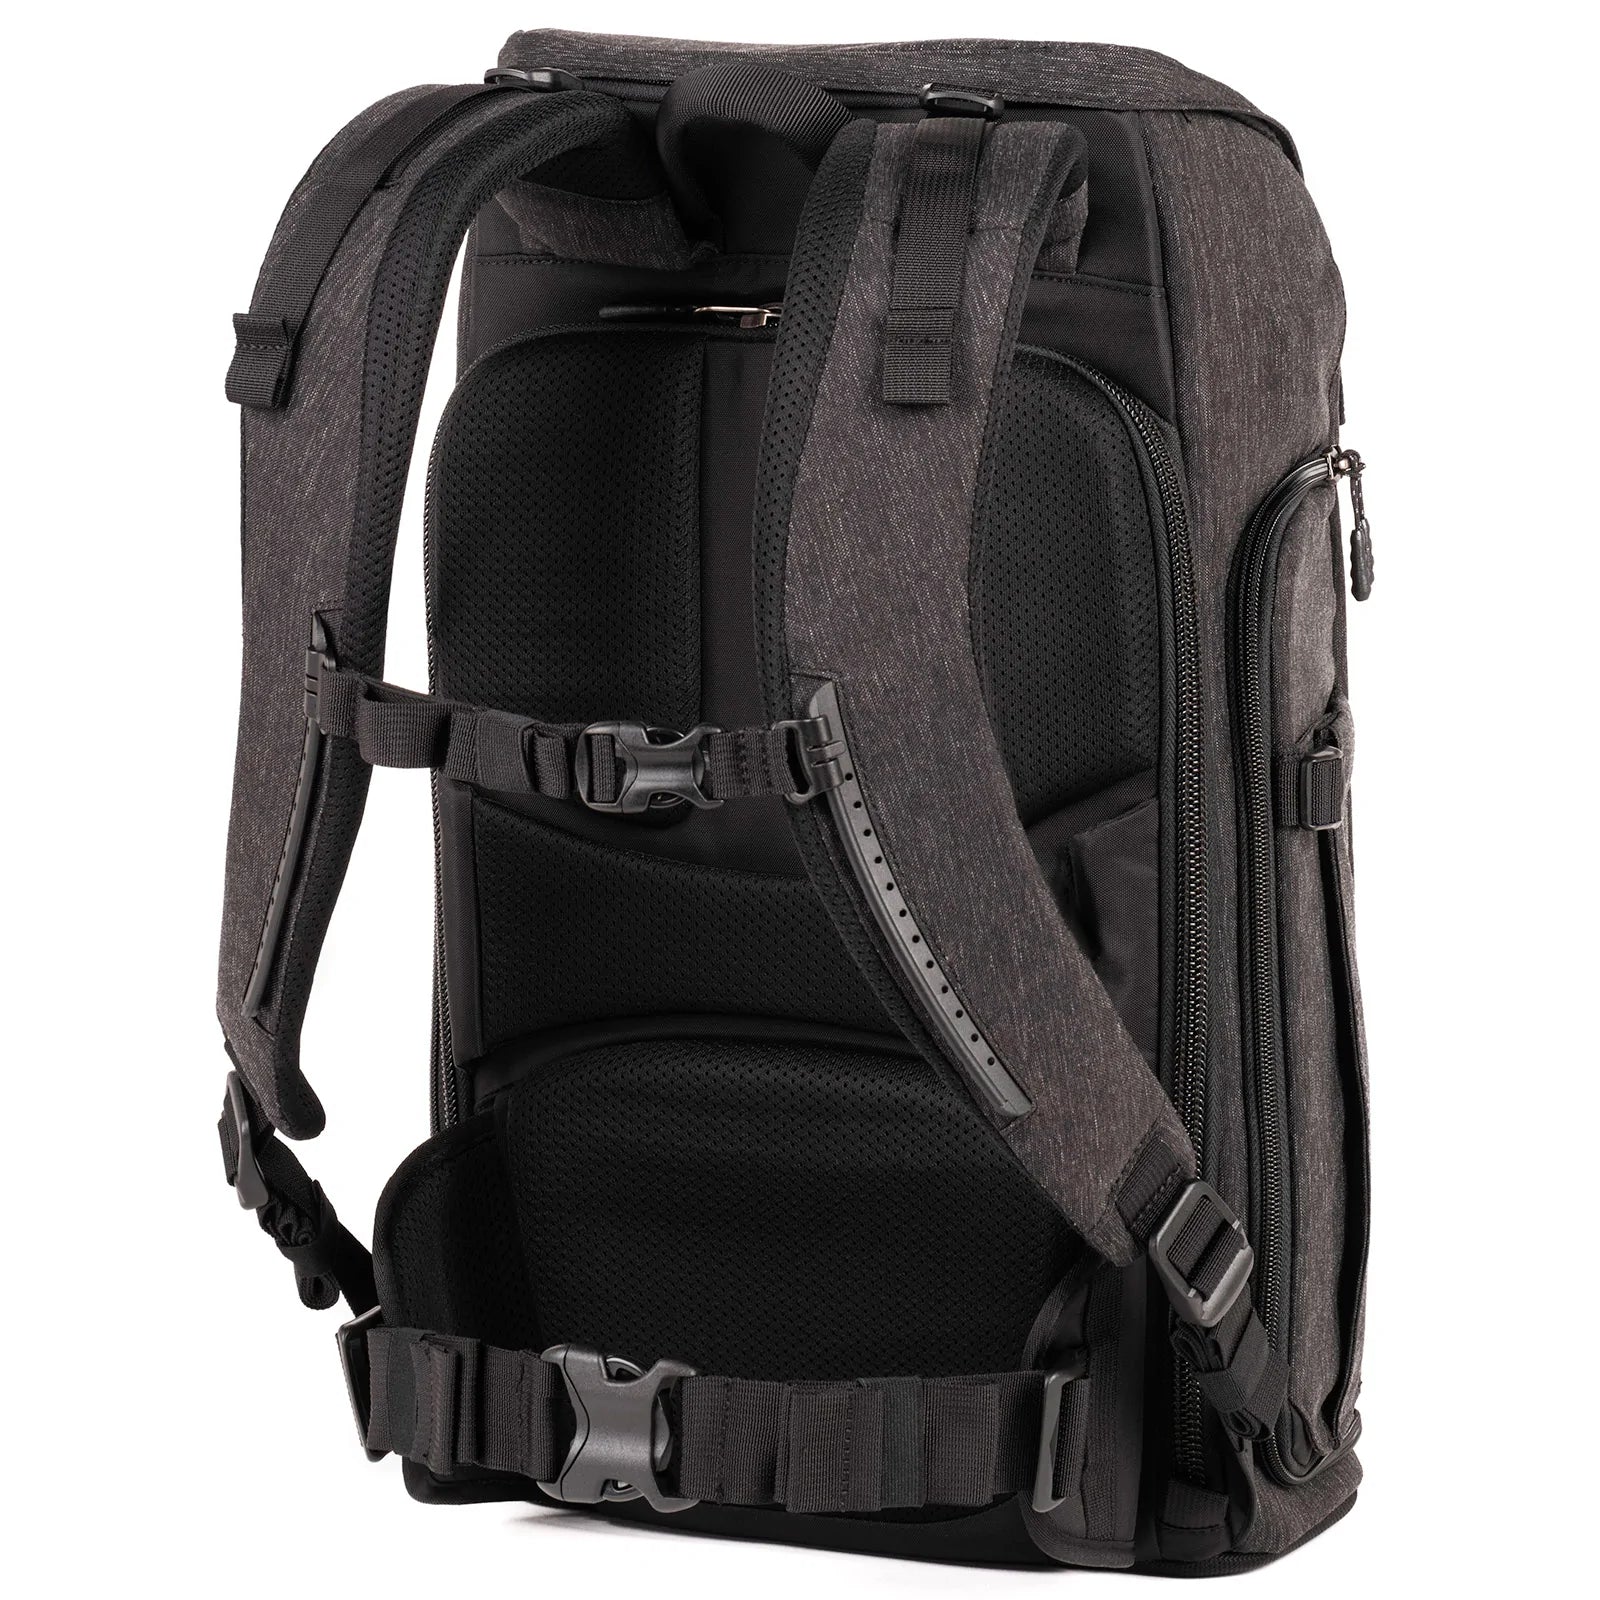 Think Tank Urban Access Backpack 15 Camera Bag - Black